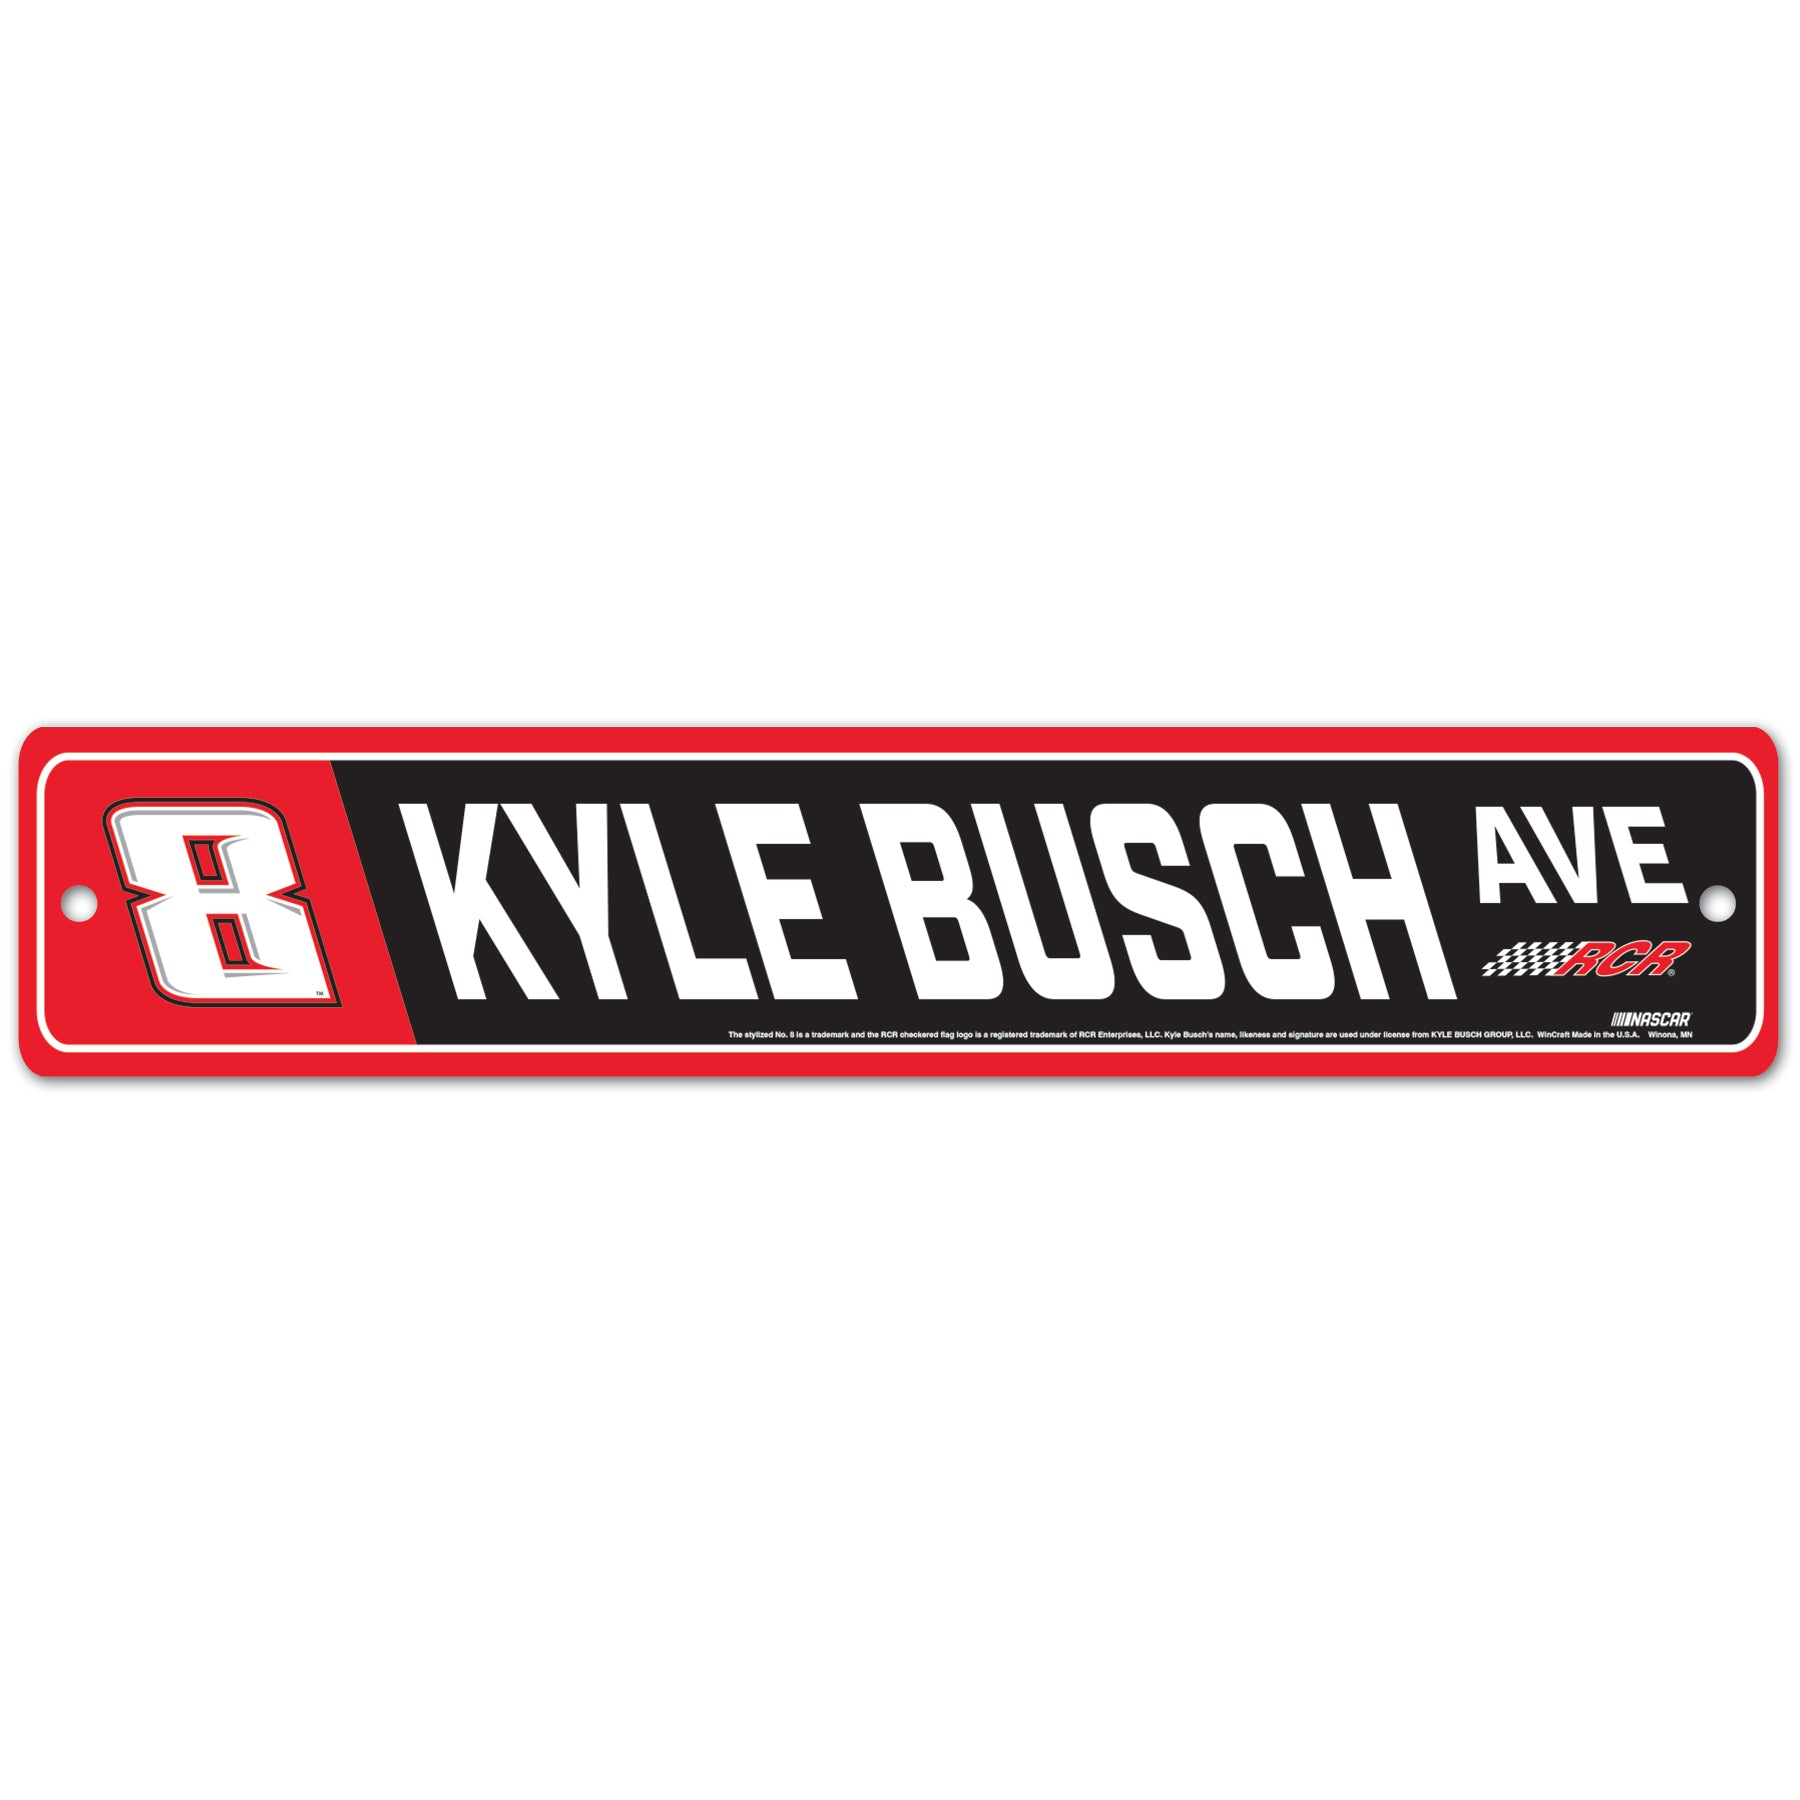 #8 KYLE BUSCH STREET SIGN